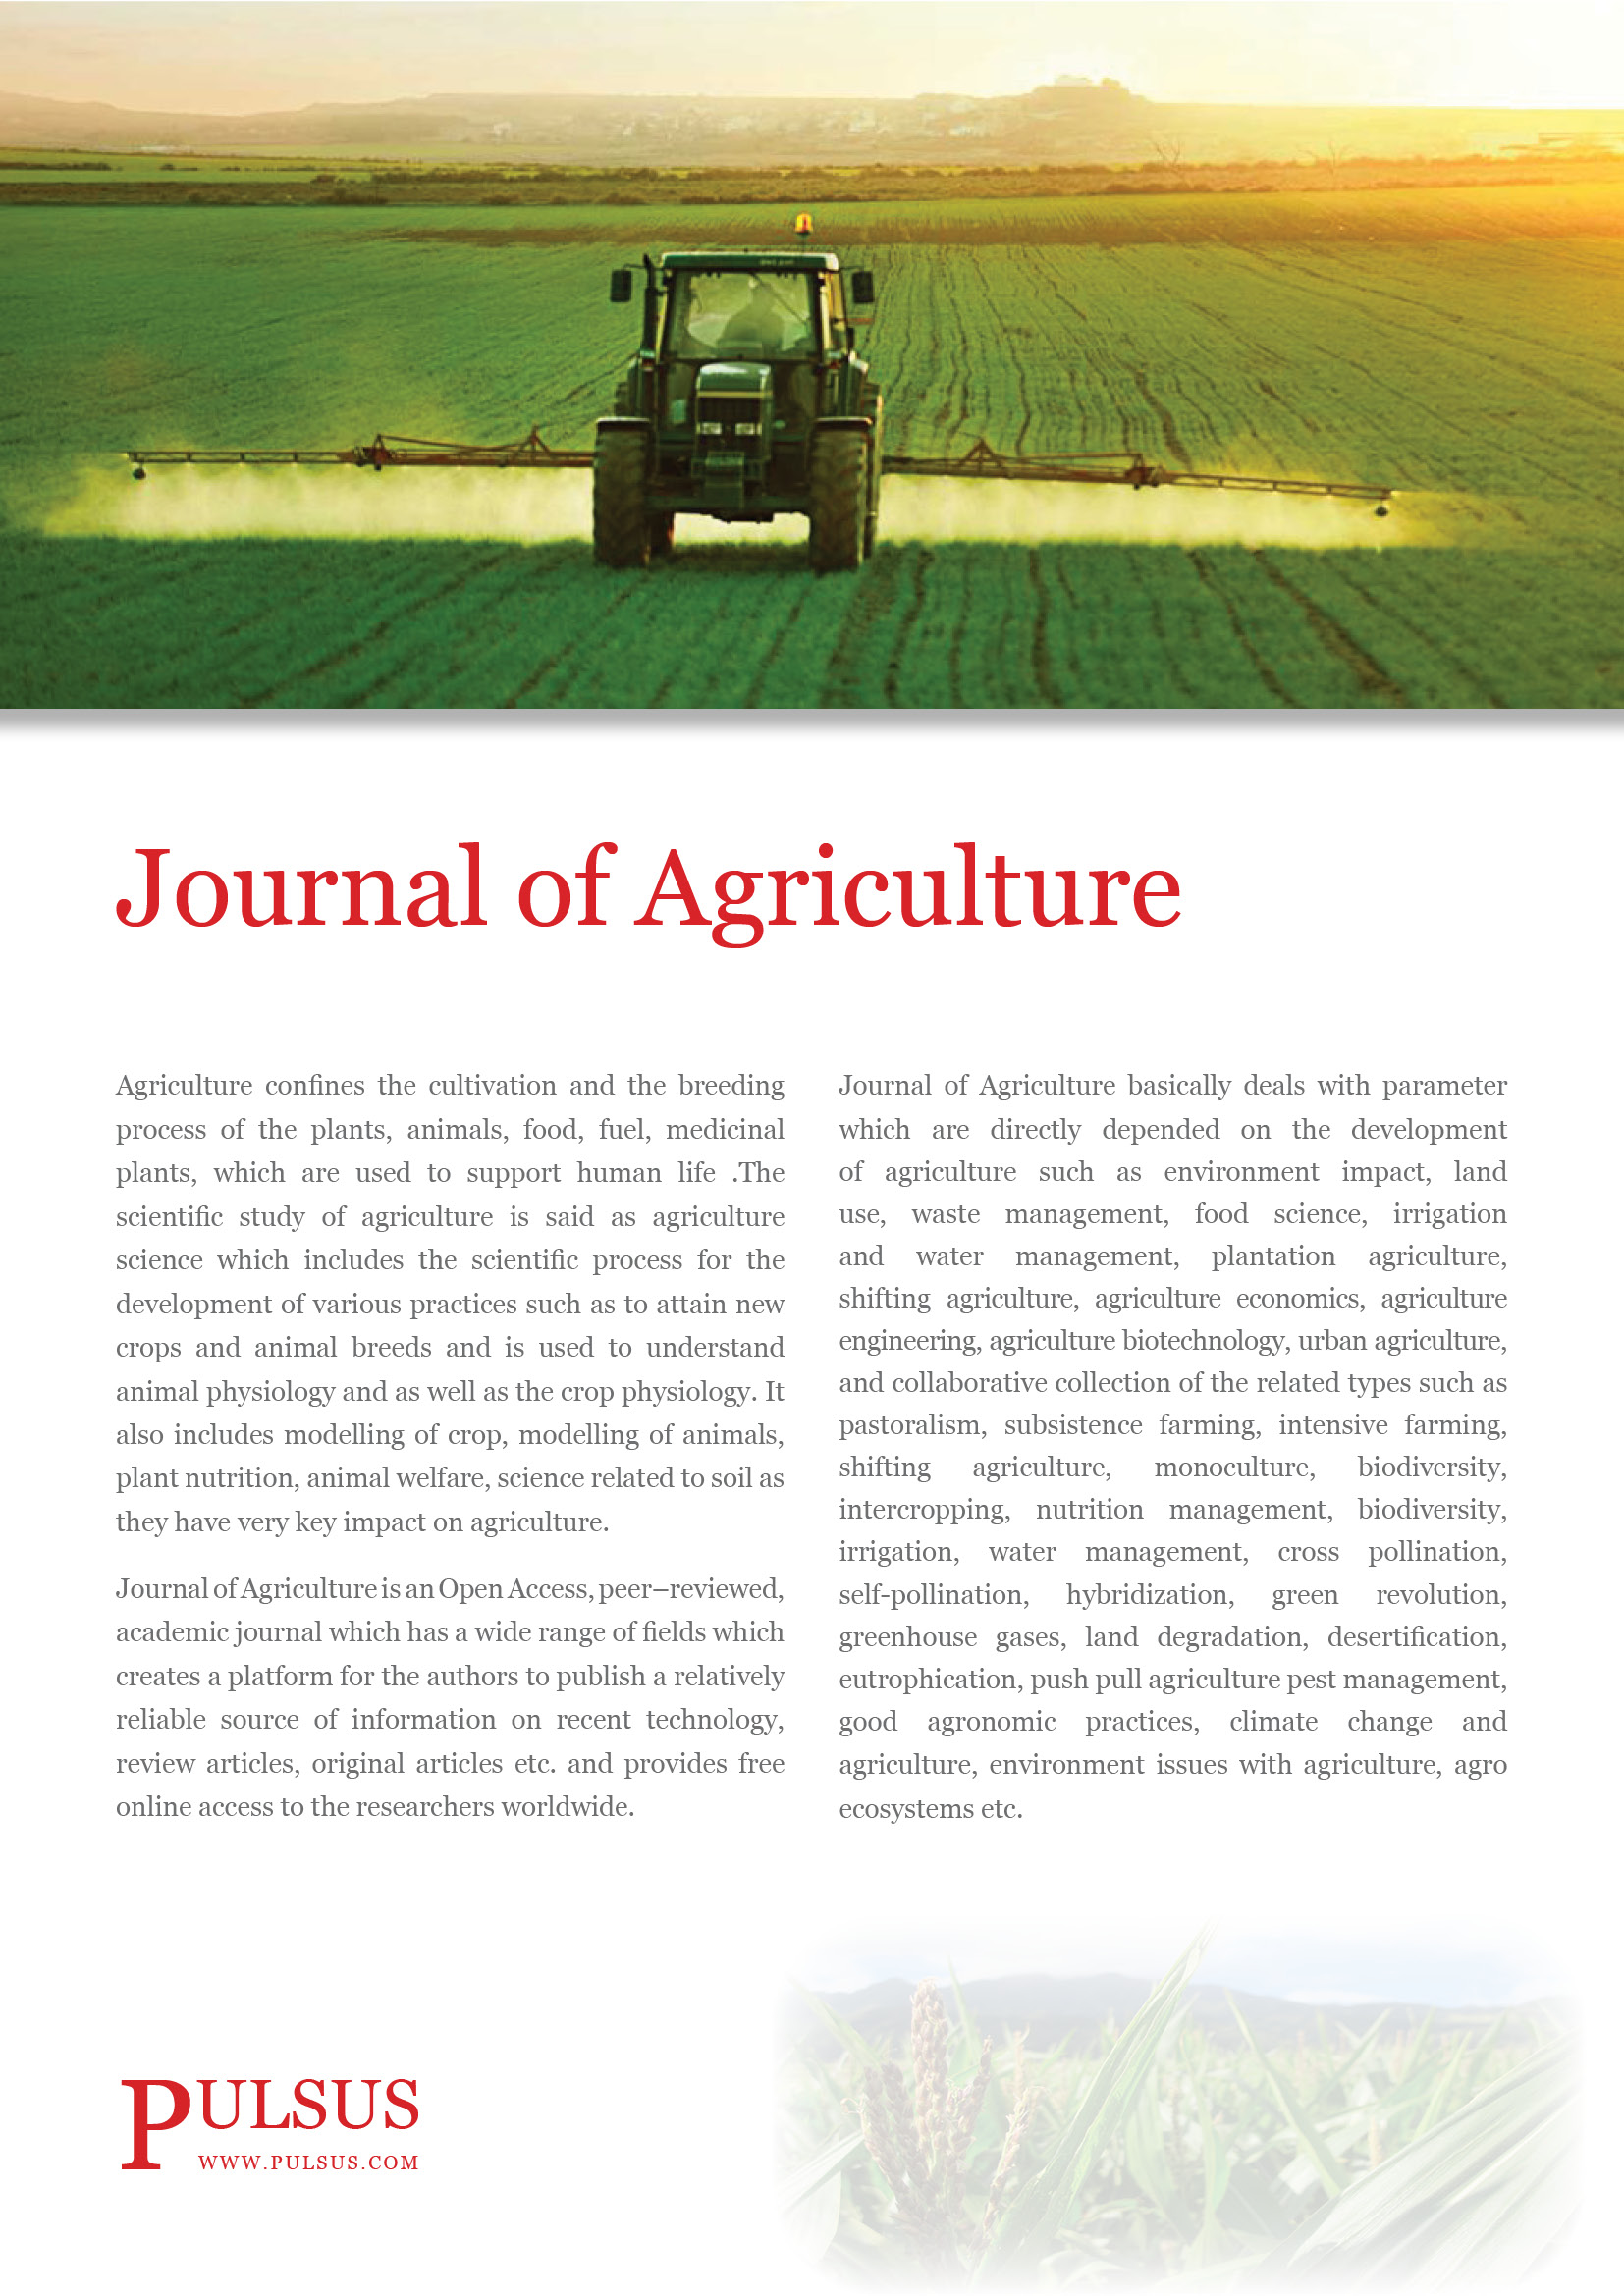 Journal de l'Agriculture